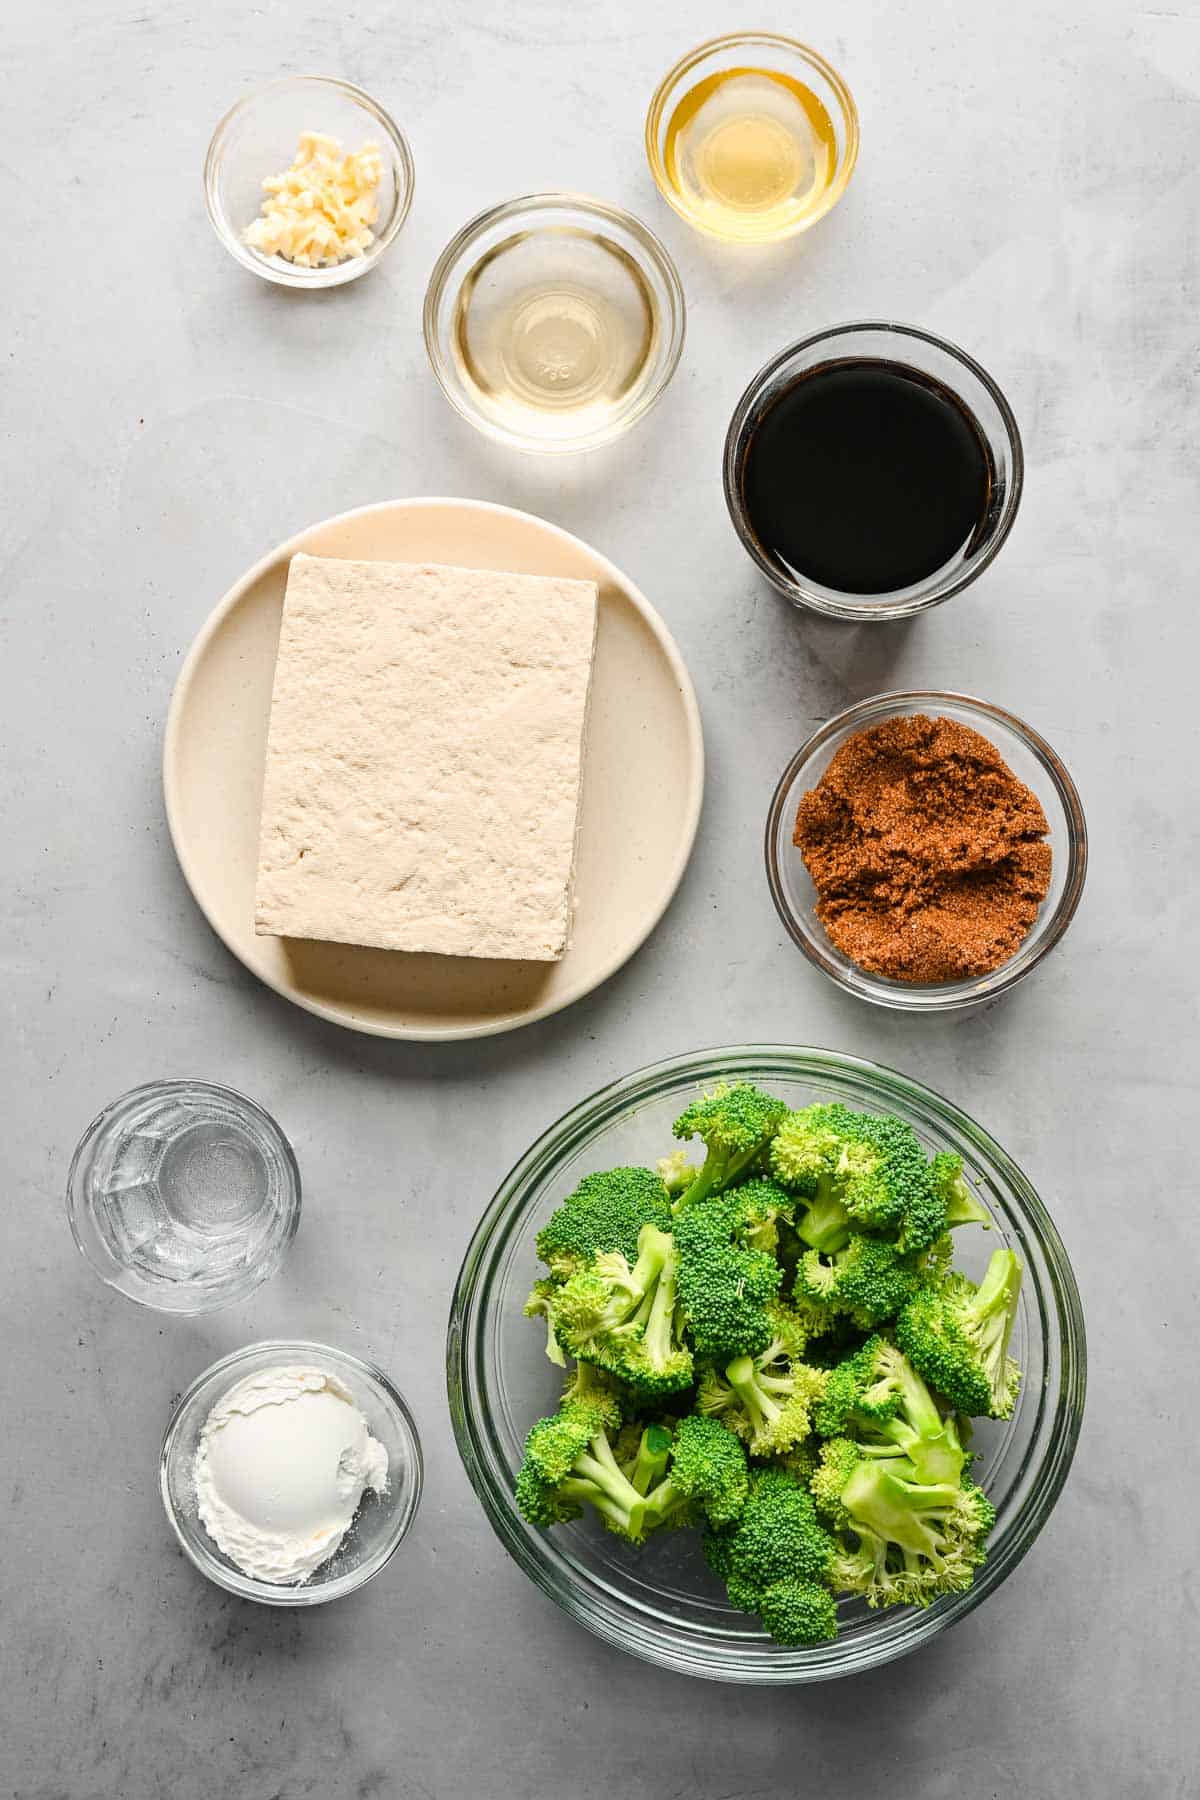 Ingredients for teriyaki tofu and broccoli bowls.